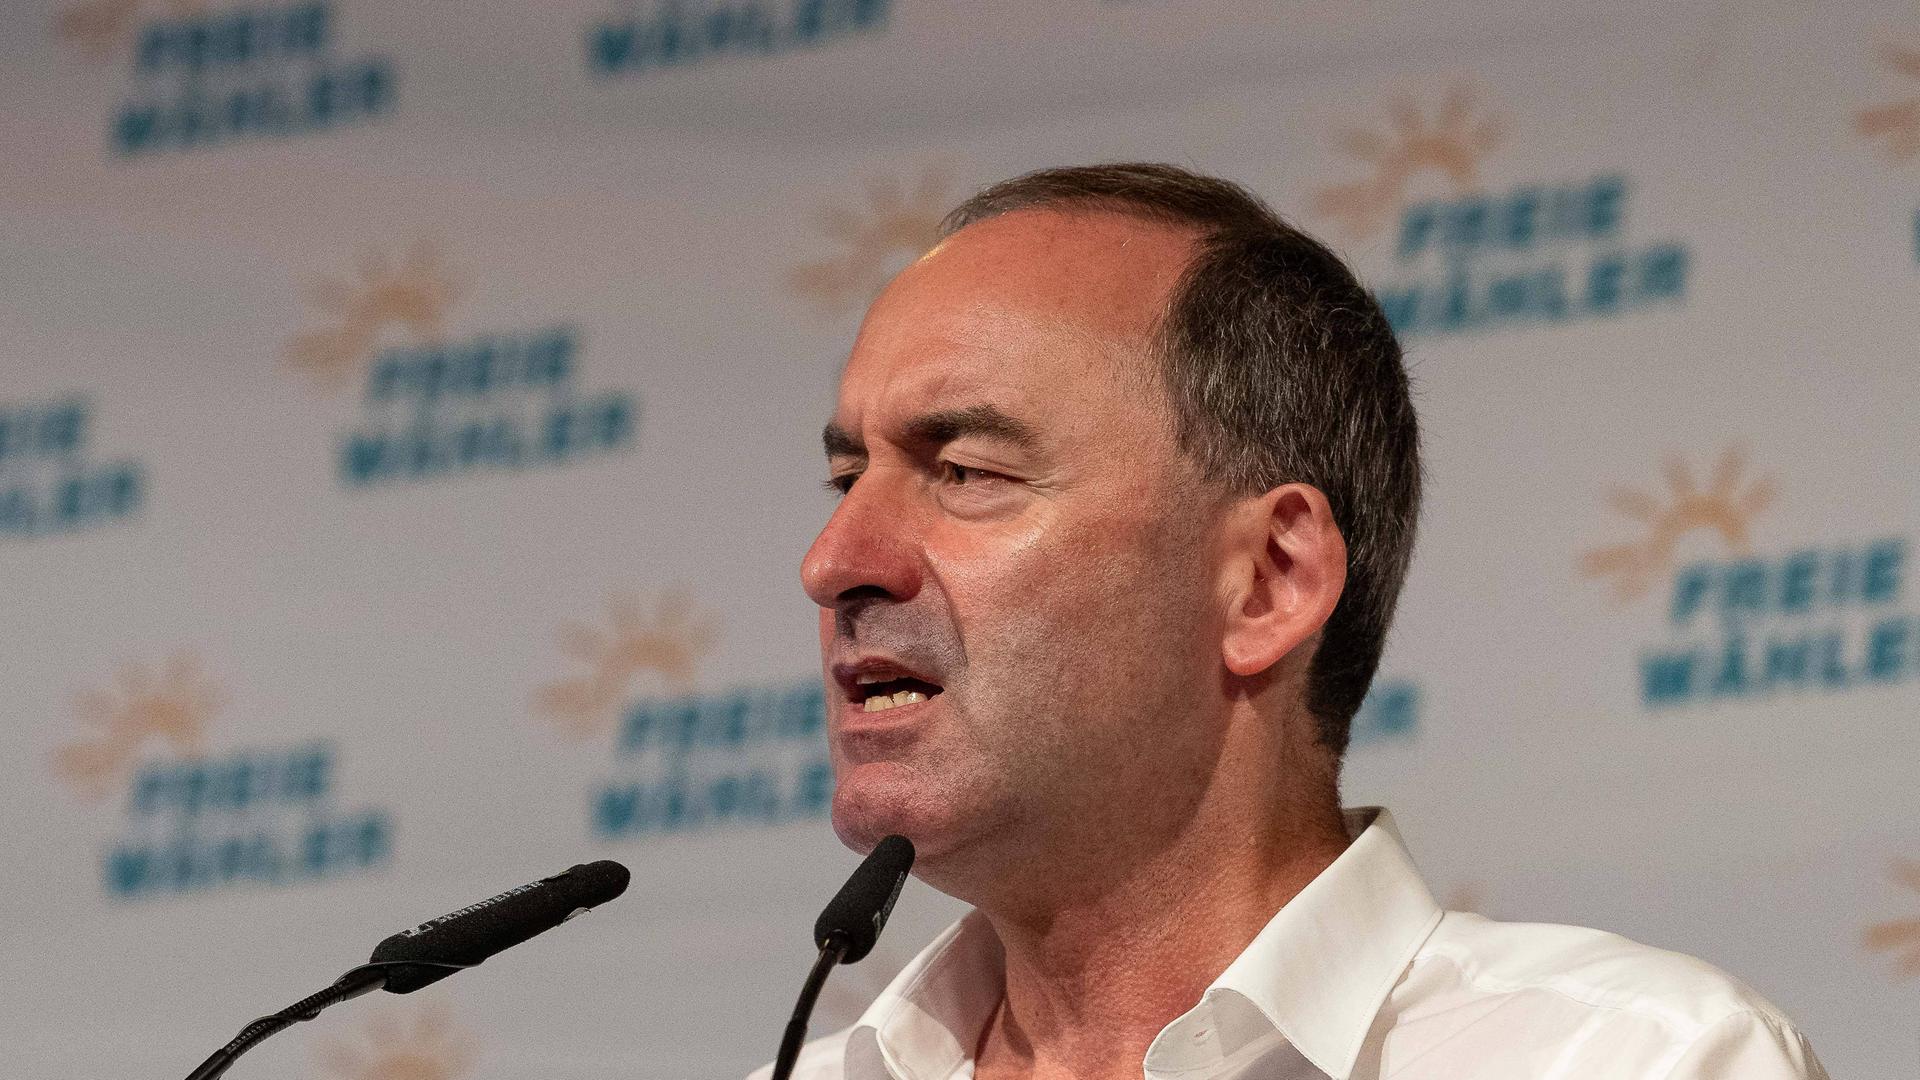 Hubert Aiwanger steht an einem Mikrofon und hält eine Rede, im Hintergrund ist eine Stellwand mit Logos seiner Partei "Freie Wähler" zu sehen.